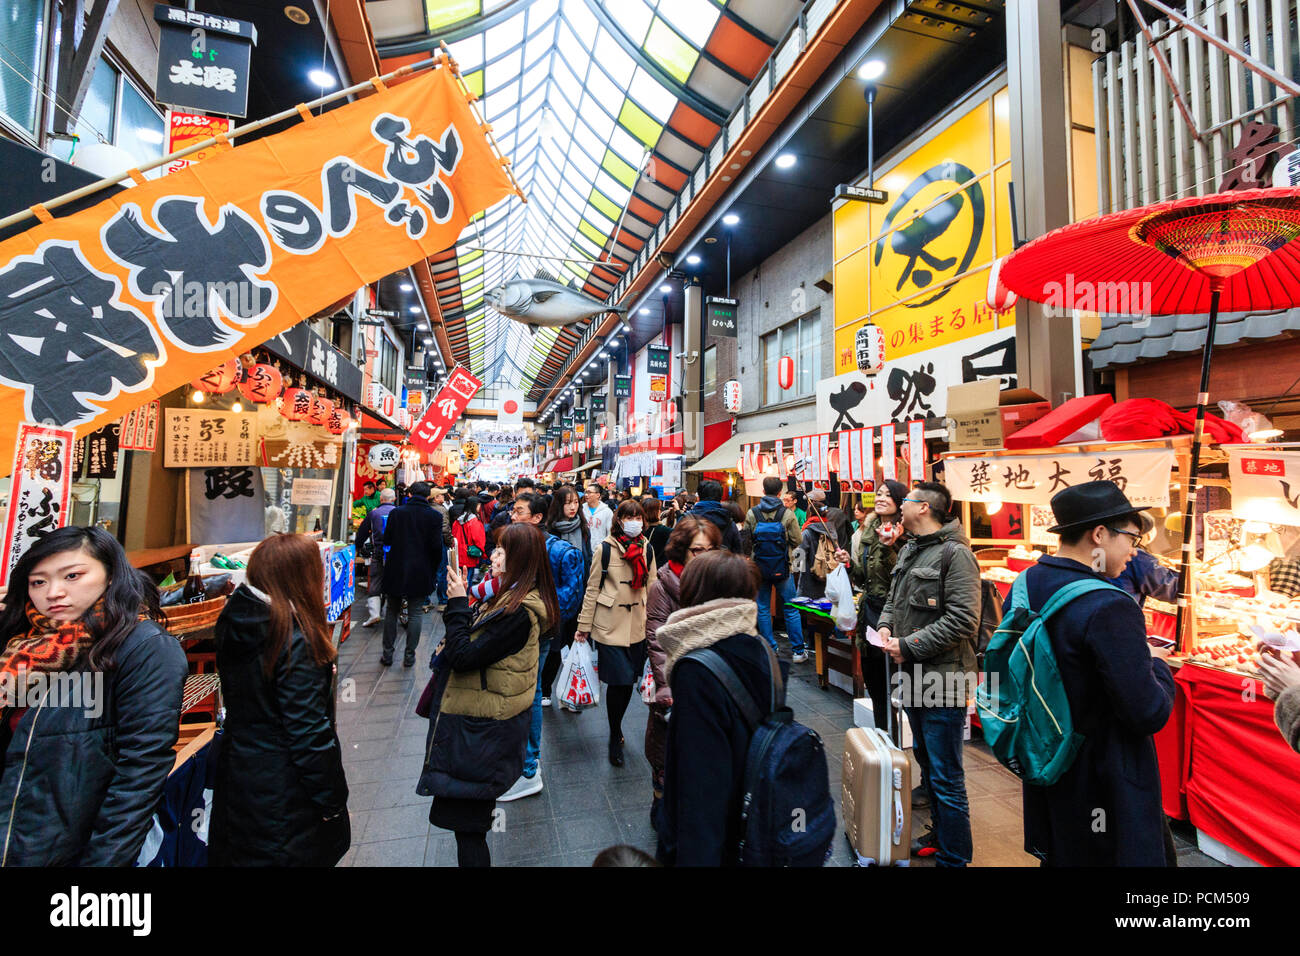 : Kuromon Ichiba, Küche essen Osaka's Markt. Blick entlang Arcade mit verschiedenen Ständen und Geschäften auf beiden Seiten der Arcade. Besetzt mit Menschen überfüllt. Winte Stockfoto